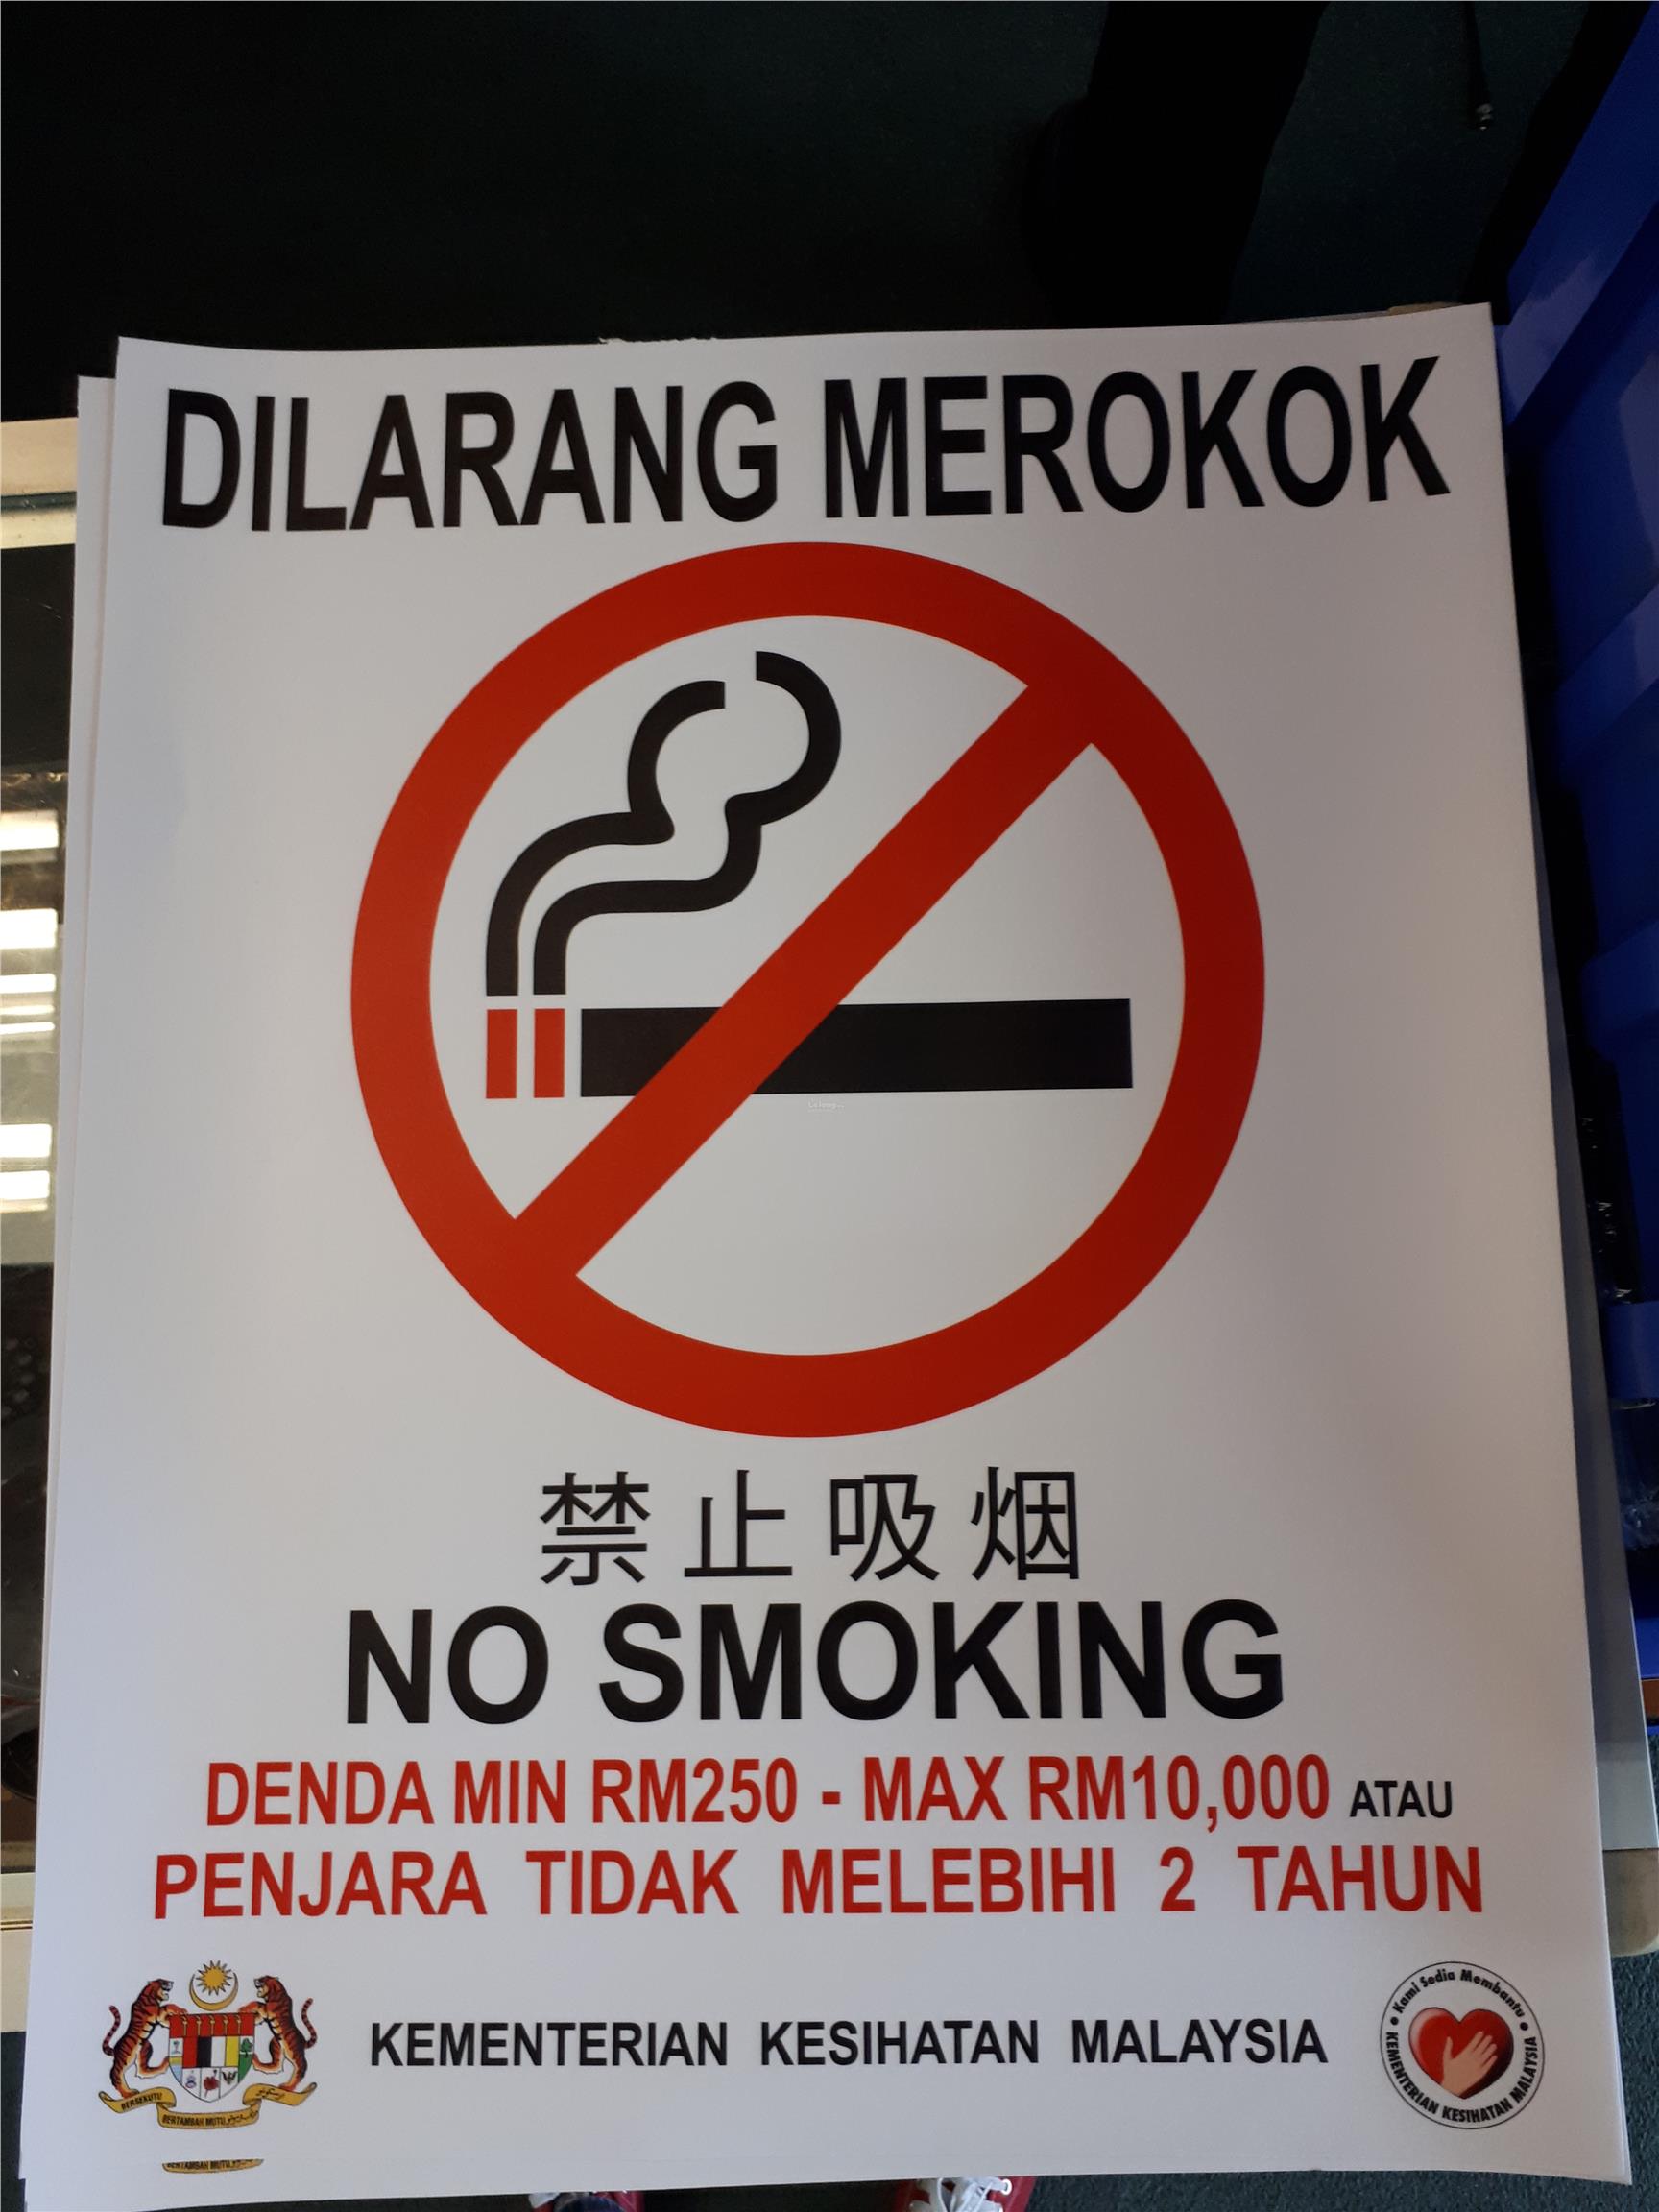  DILARANG MEROKOK  NO SMOKING SIGN S end 1 4 2022 11 15 AM 